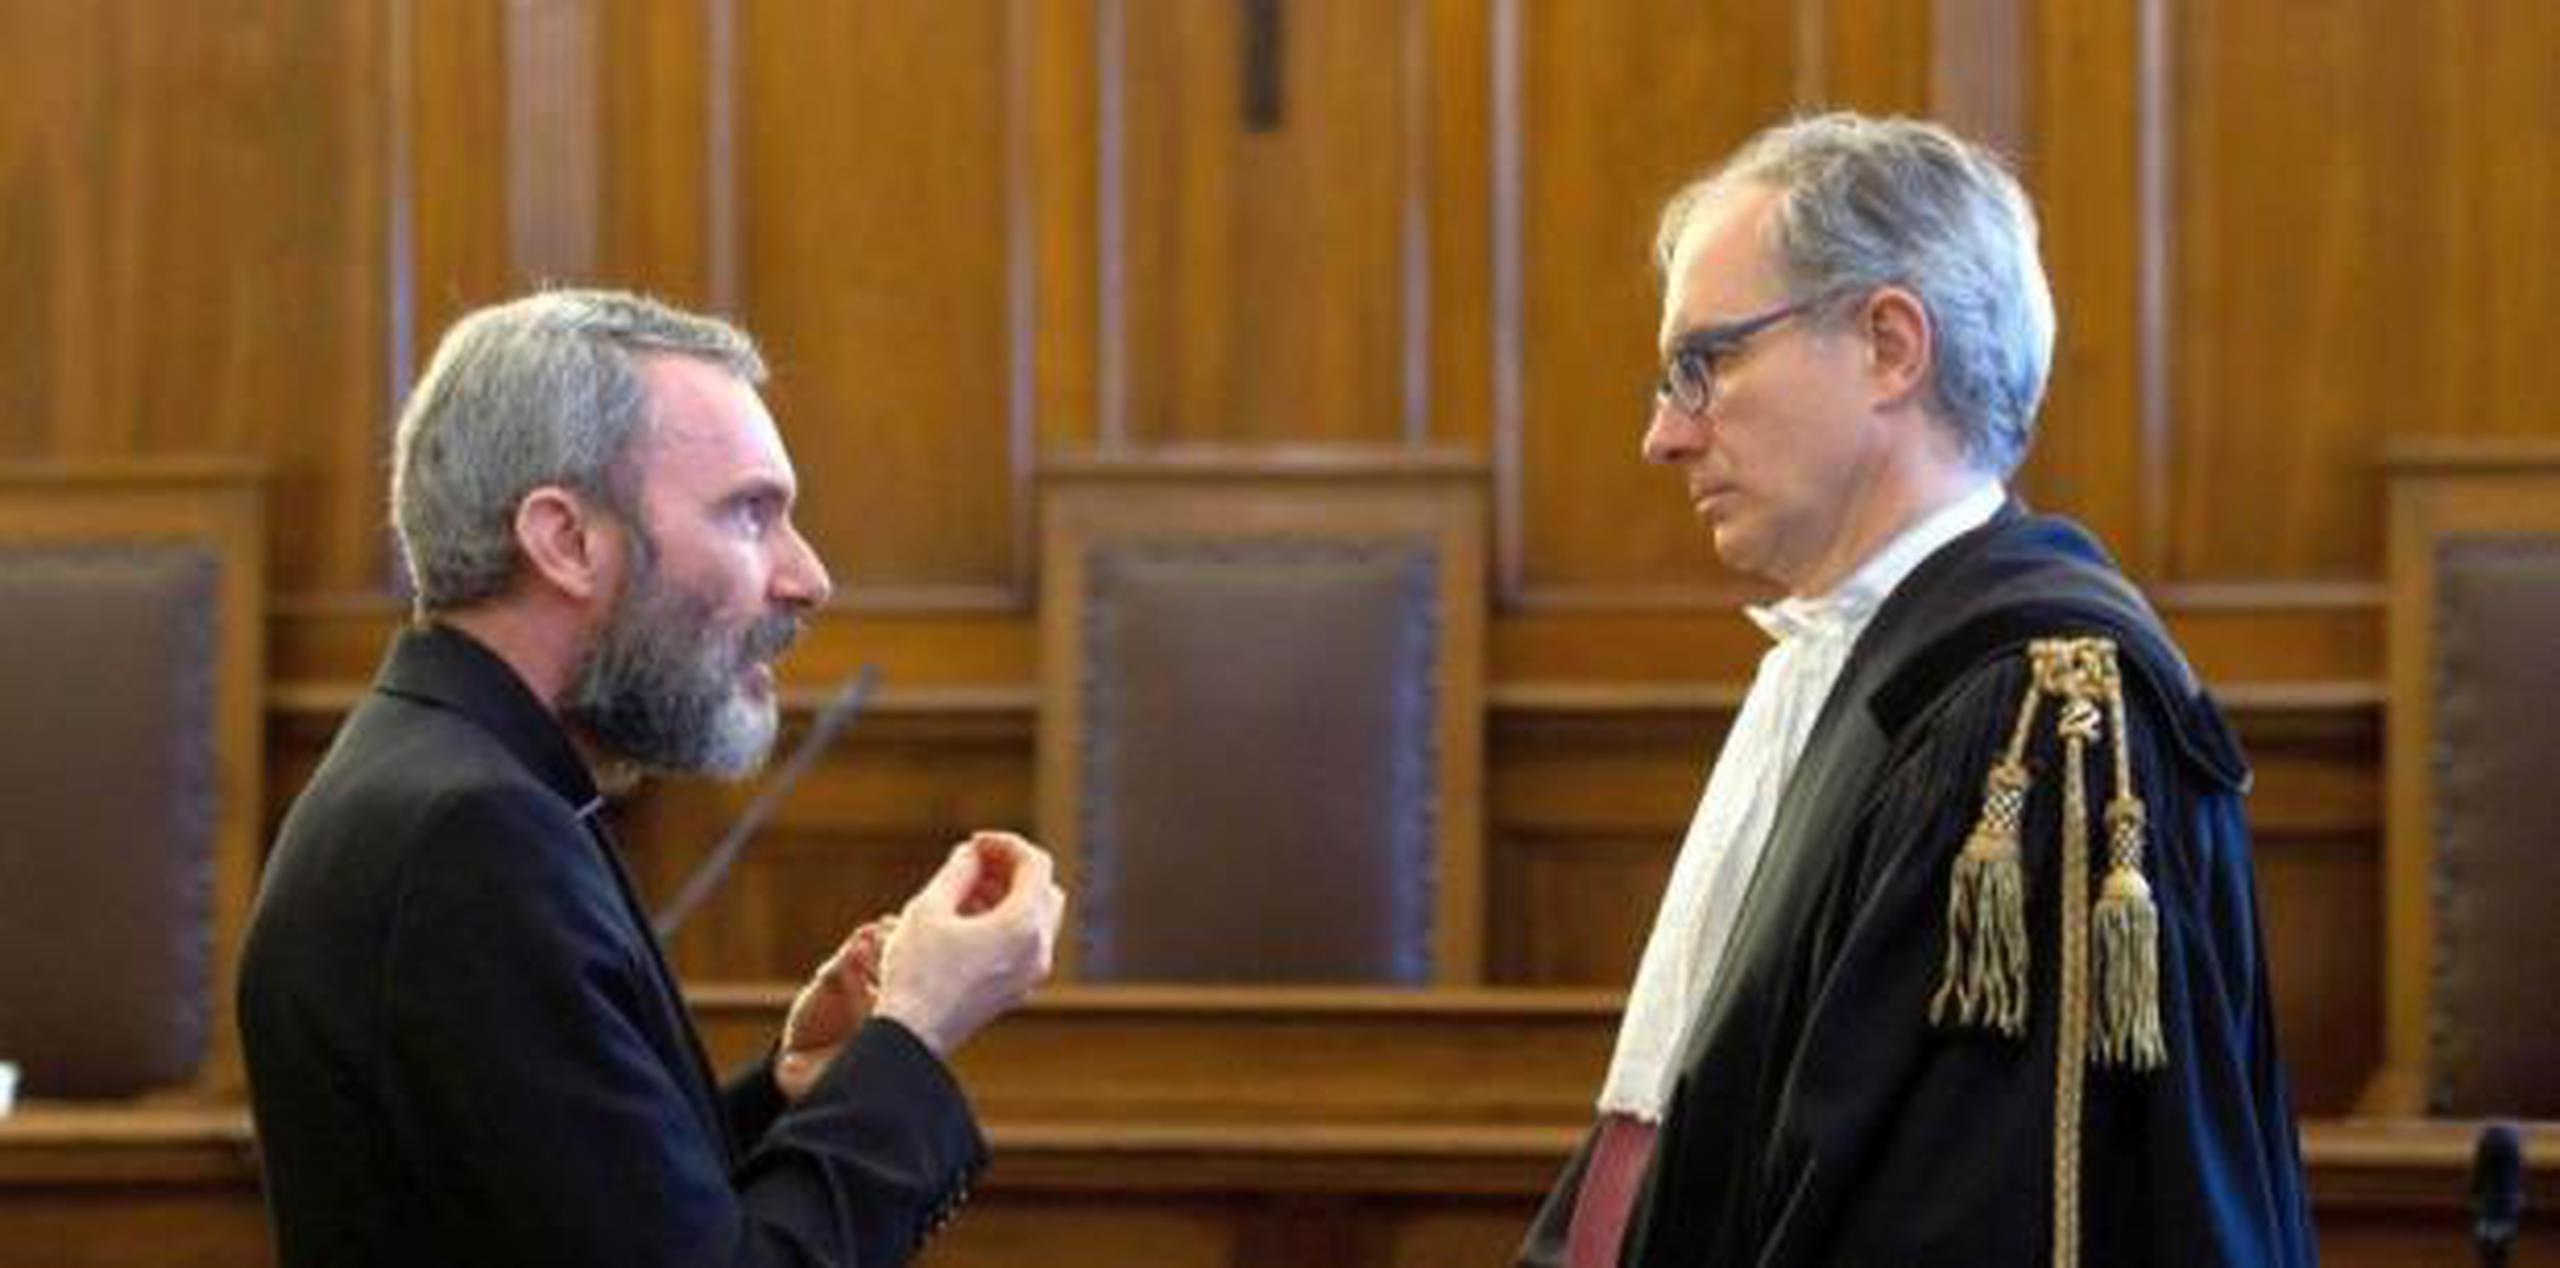 El excura de la Santa Sede Monseñor Carlo Alberto Capella, a la izquierda, habla con su abogado Roberto Borgogno dentro de un tribunal del Vaticano durante su juicio. (GDA)